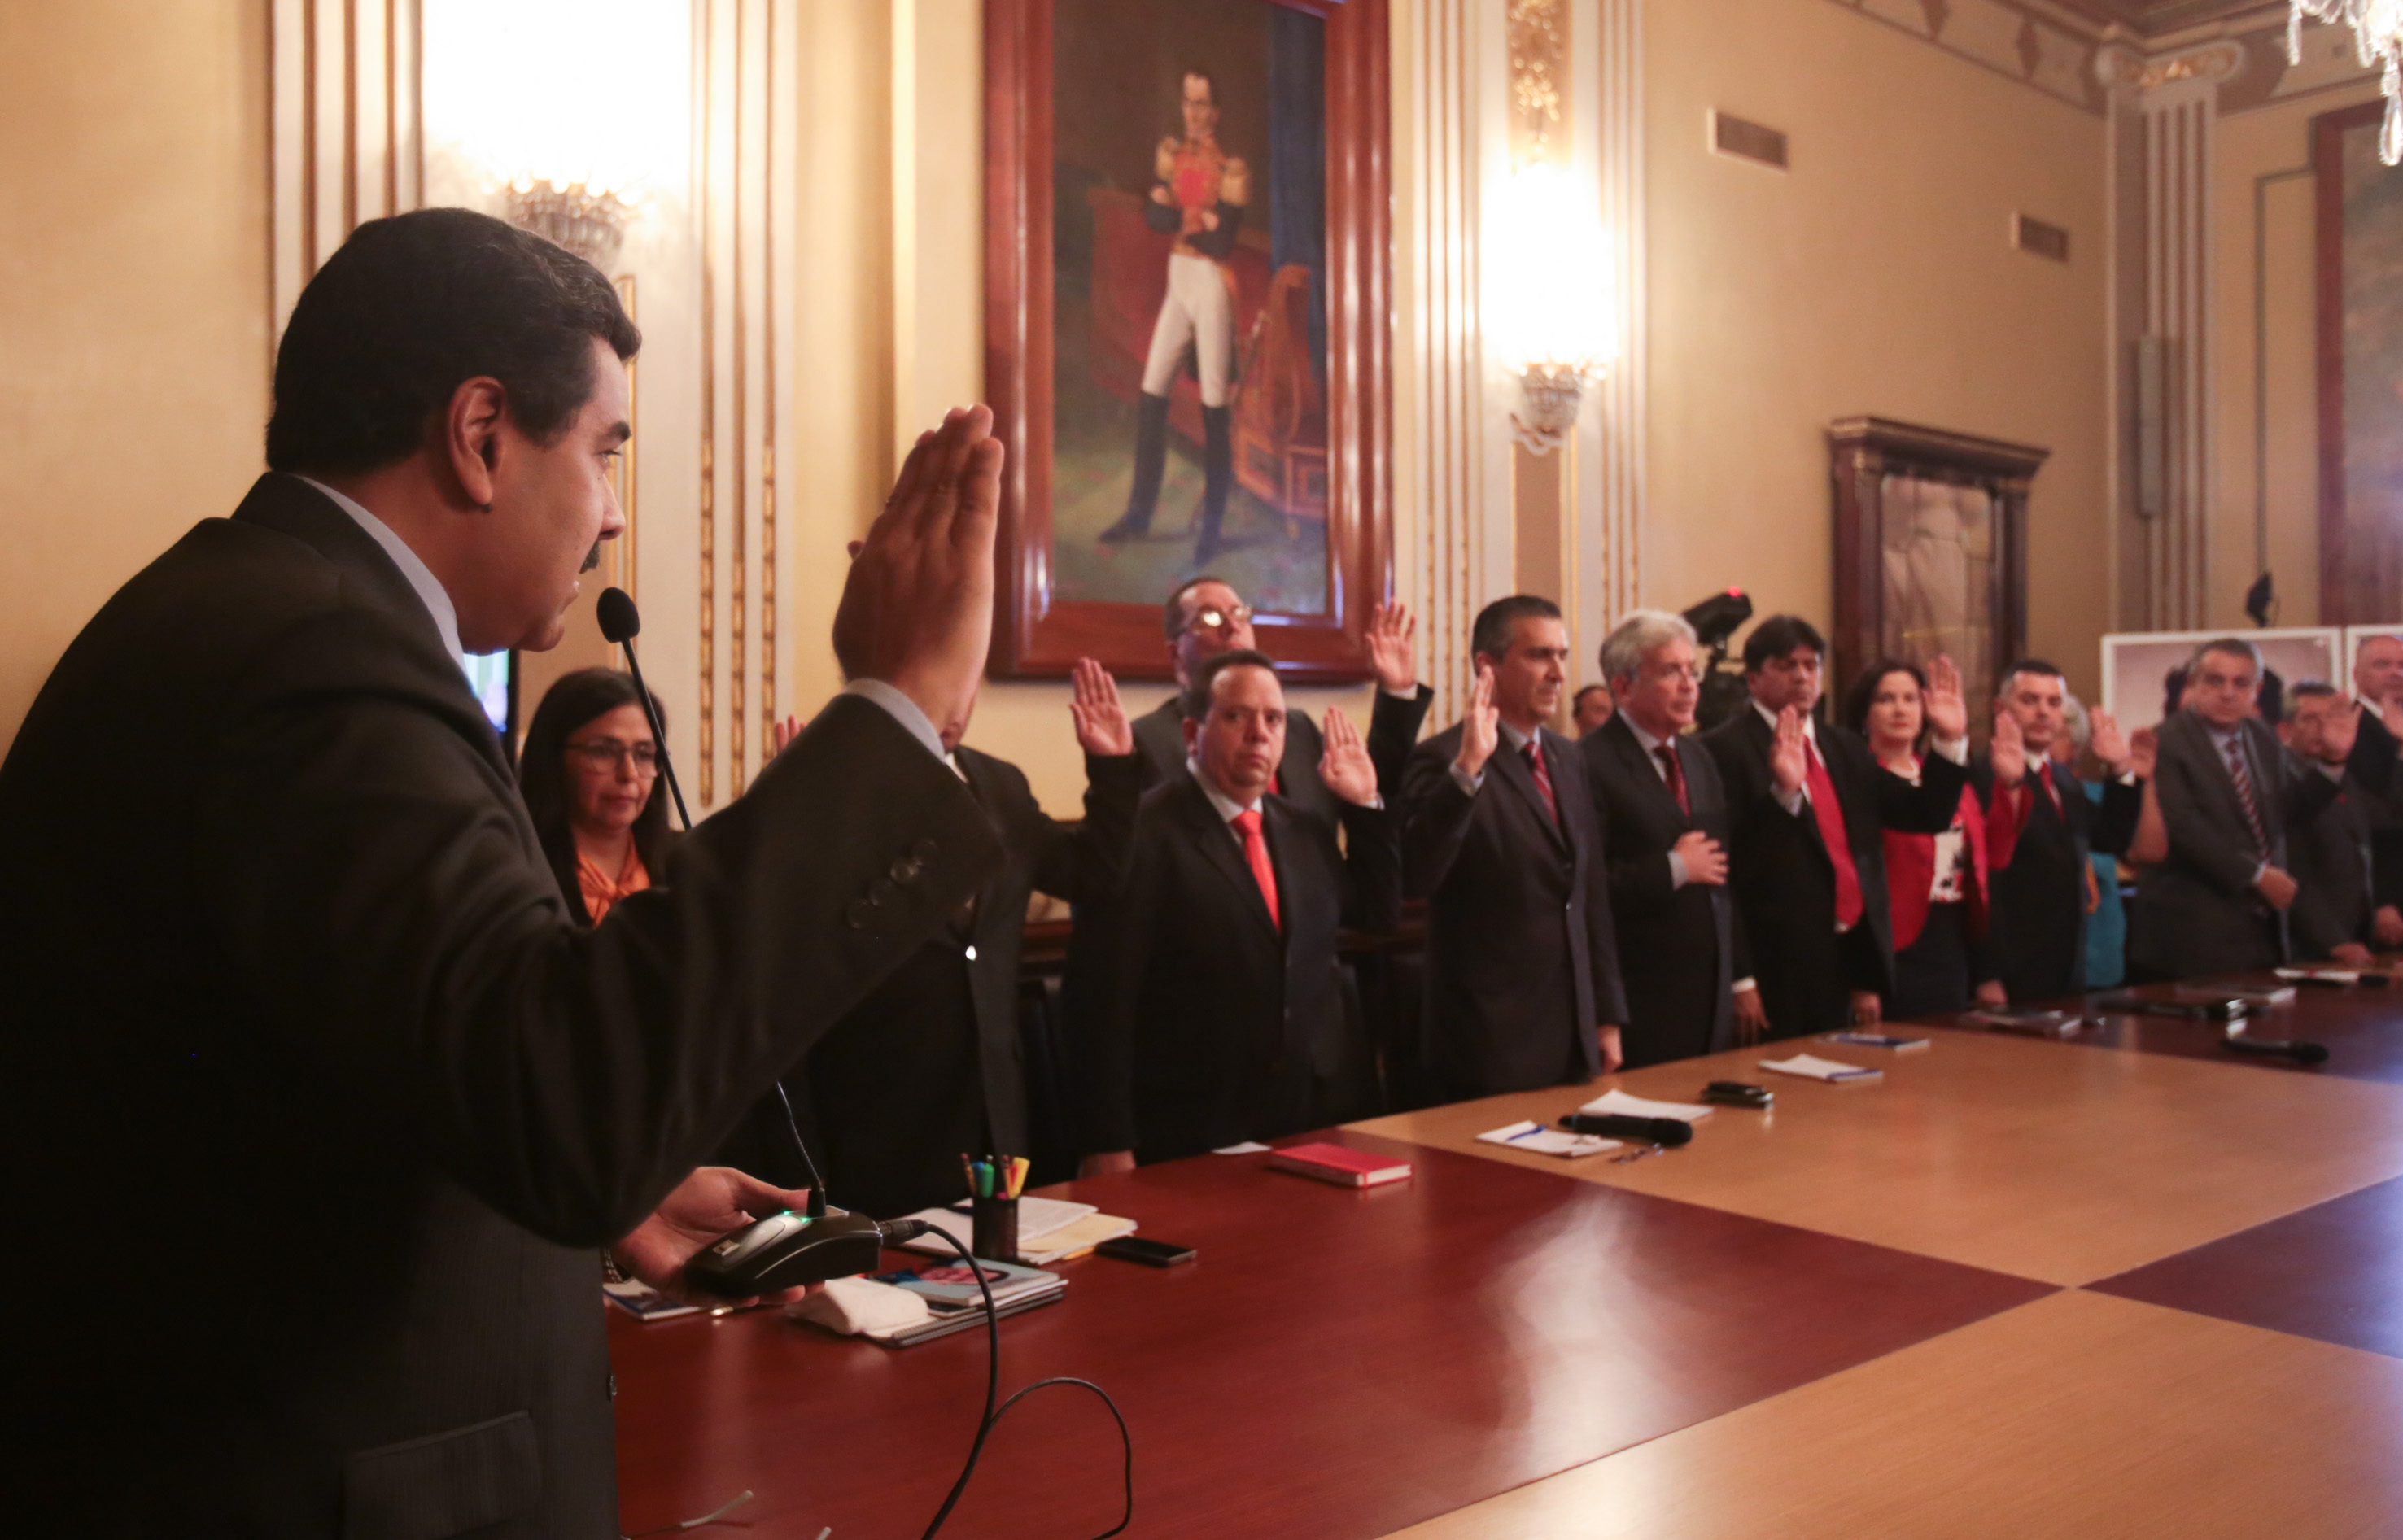 Presidente Nicolás Maduro anunció cambios en su gabinete de ministros